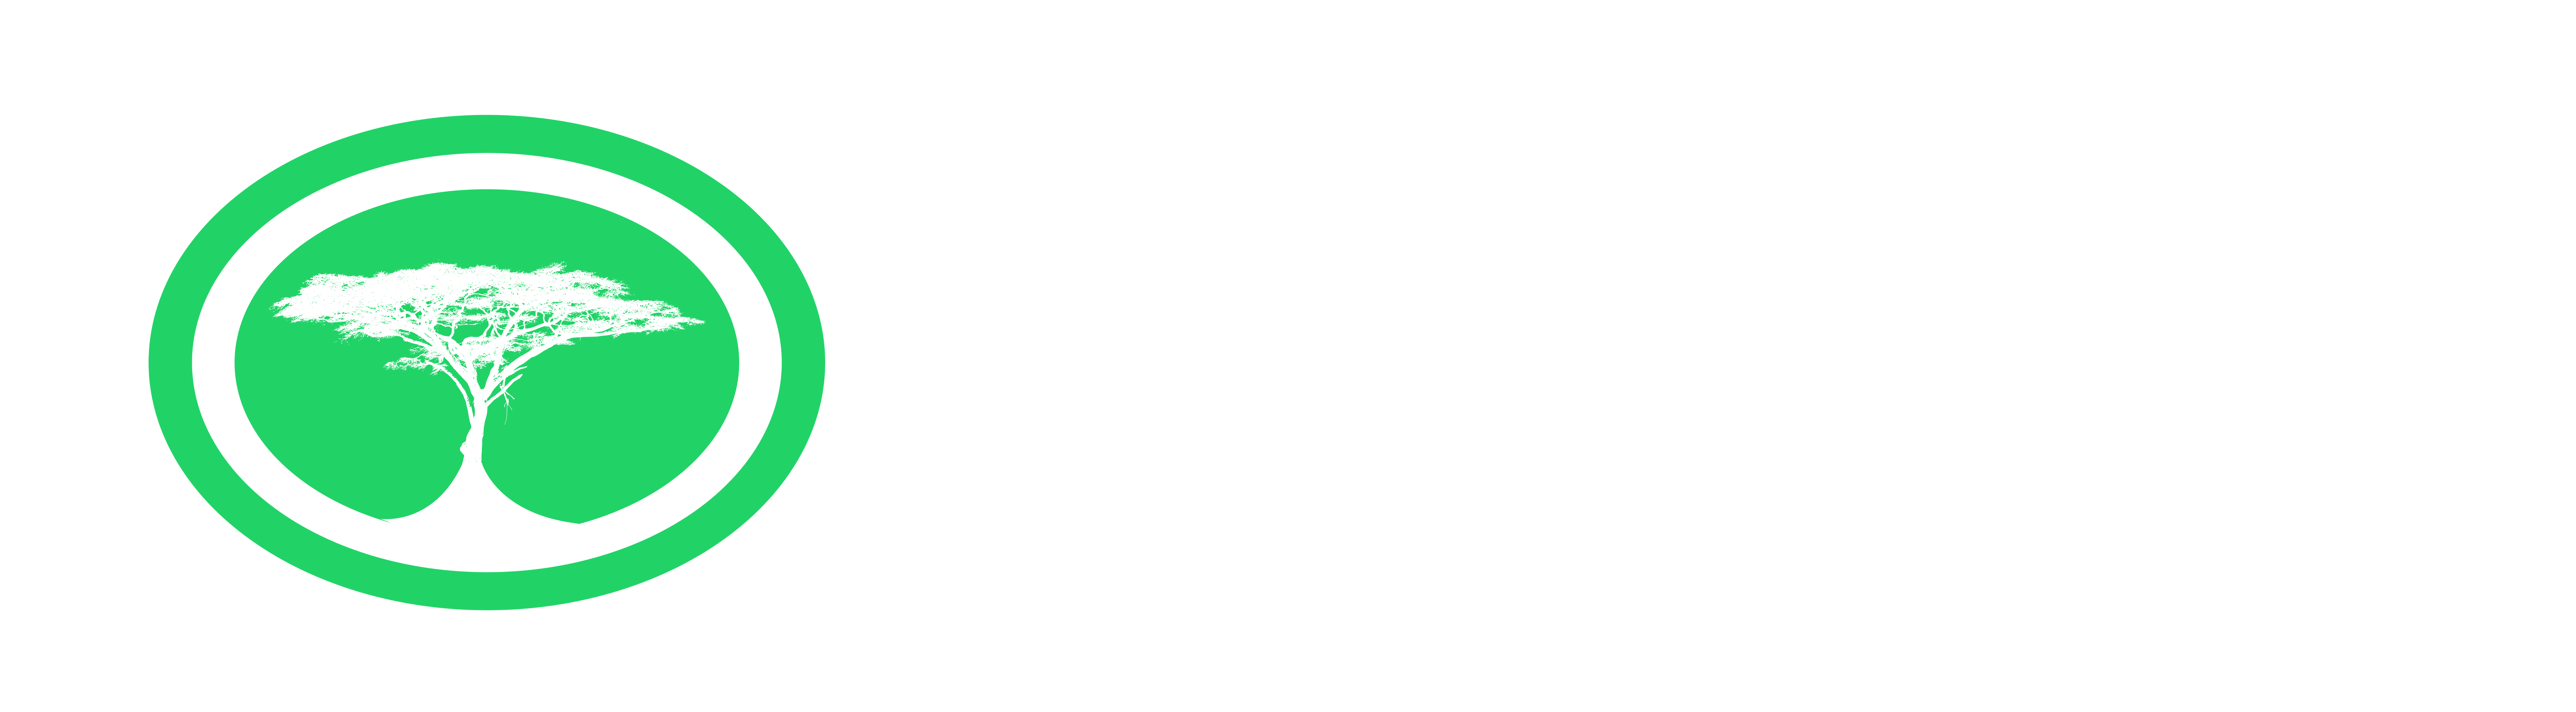 ACACIA COMMUNITY CENTRE